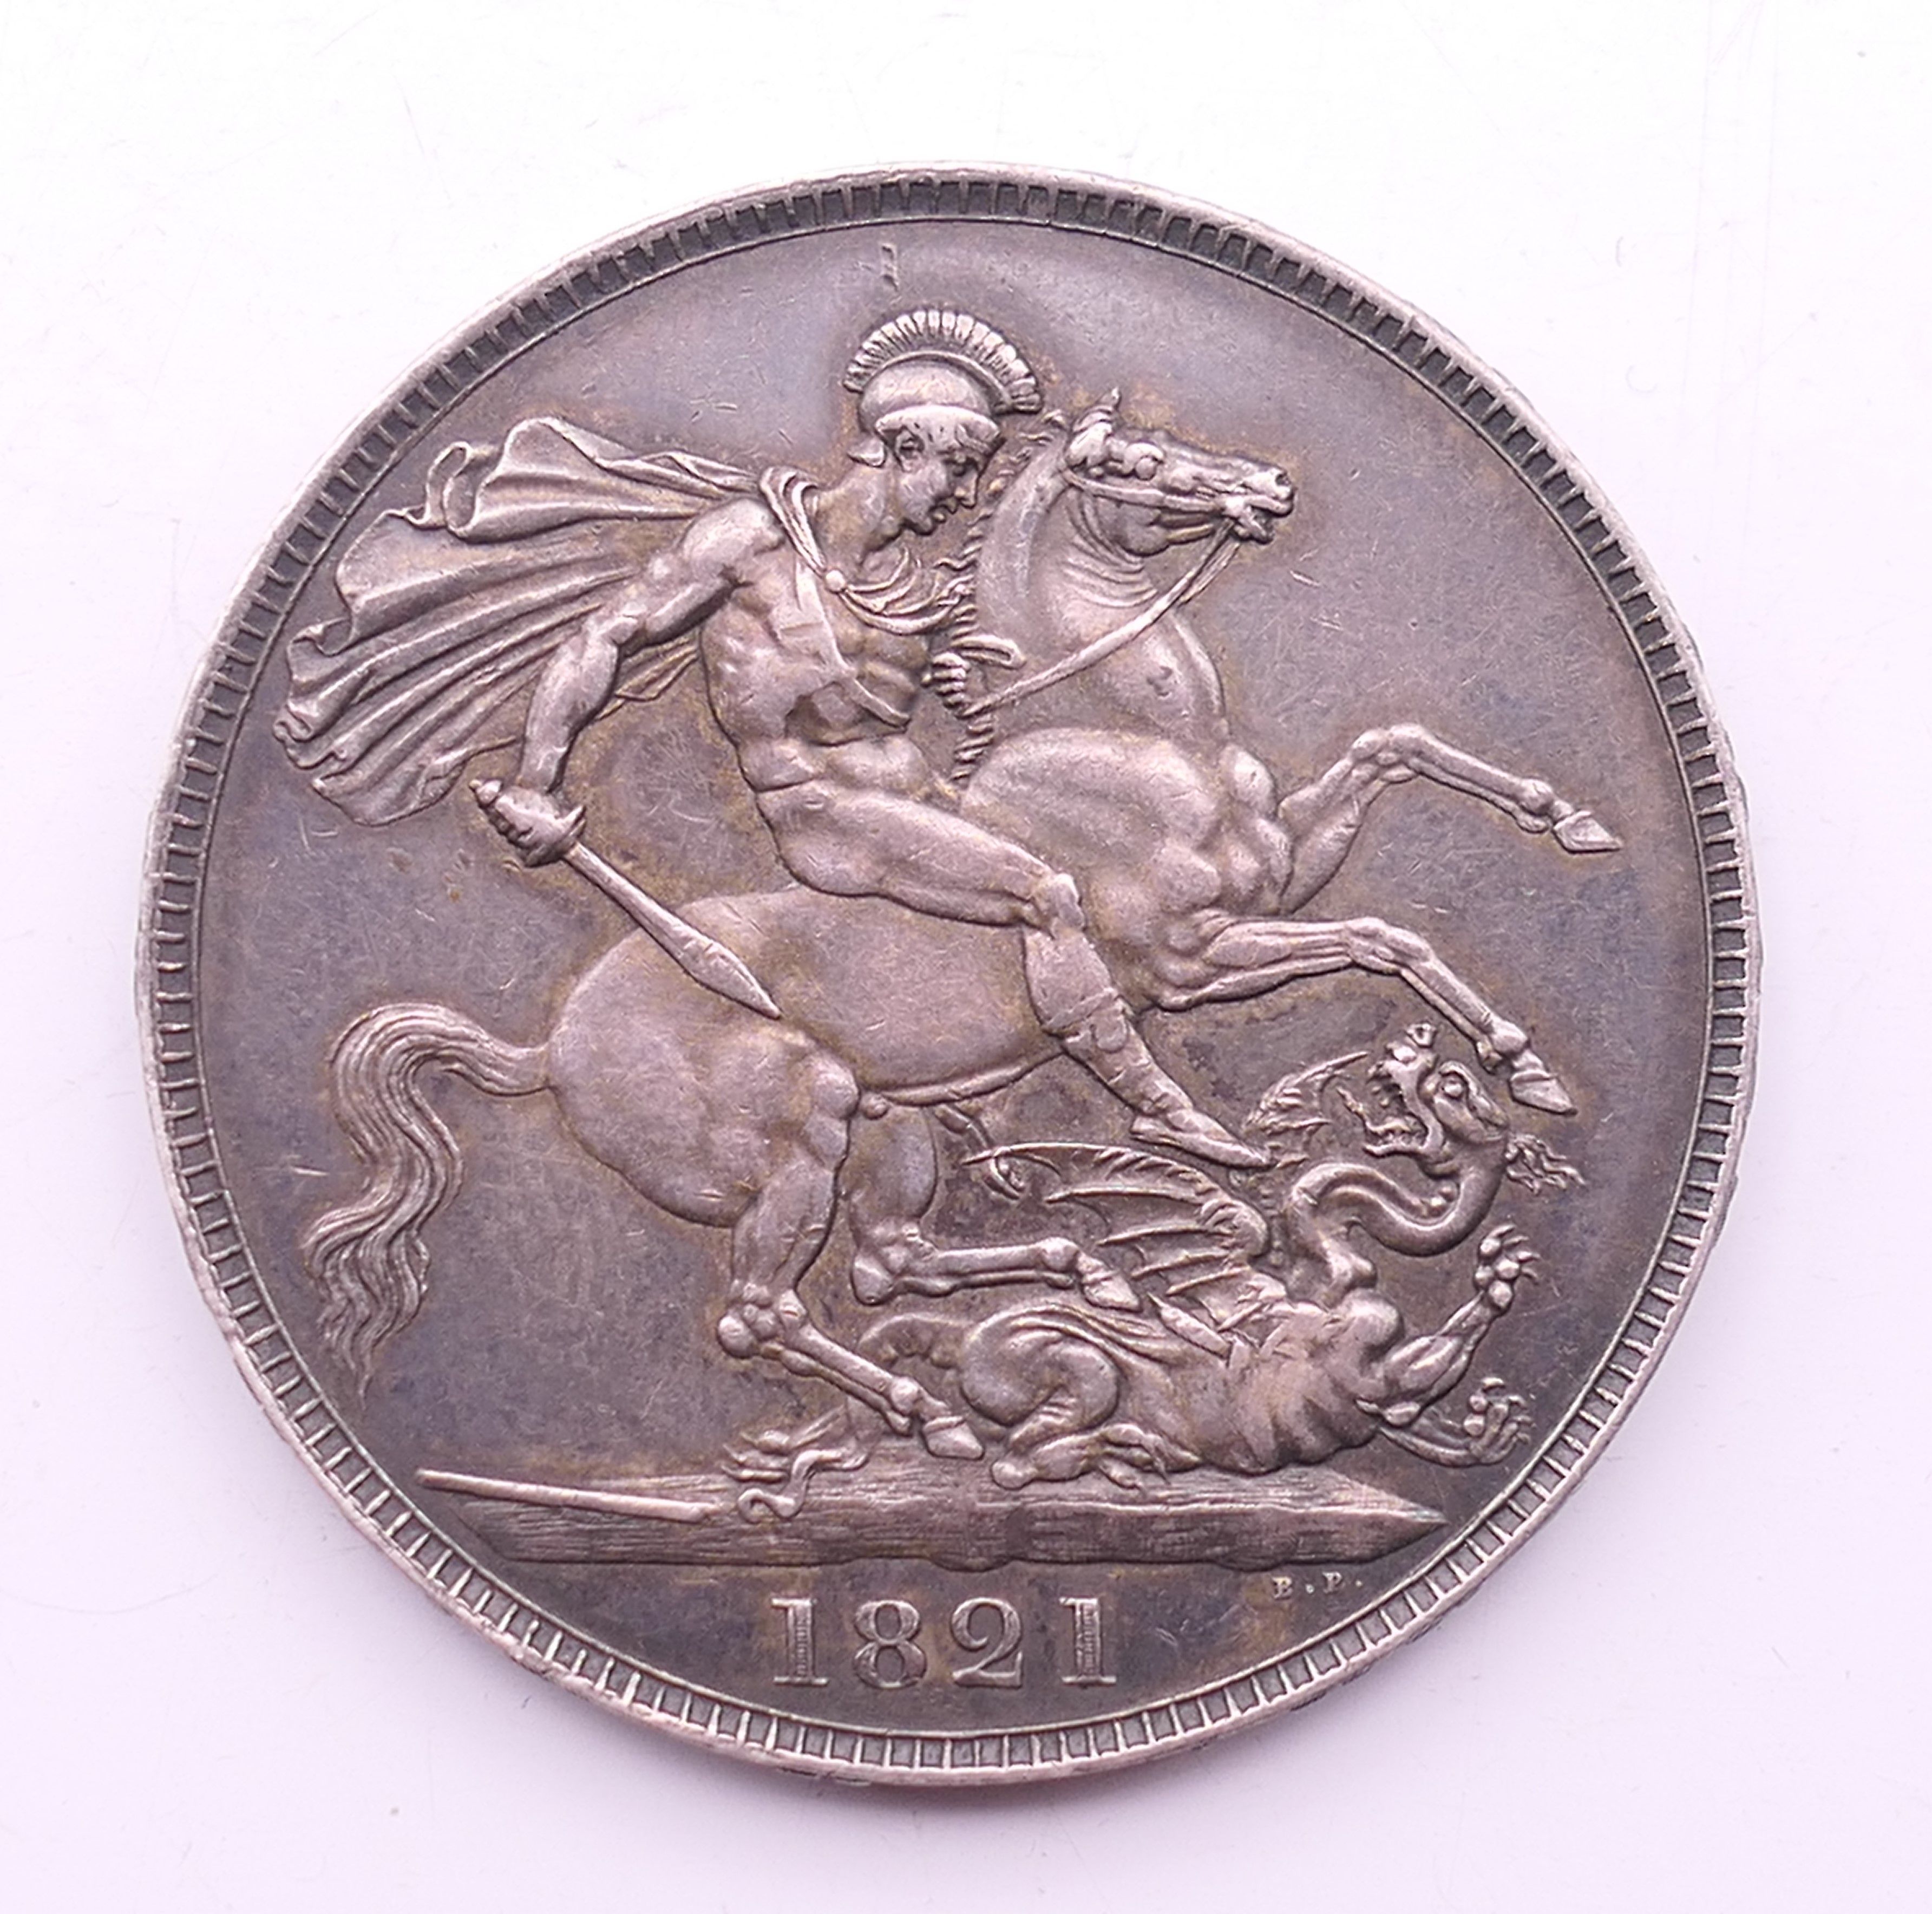 An 1821 silver crown.